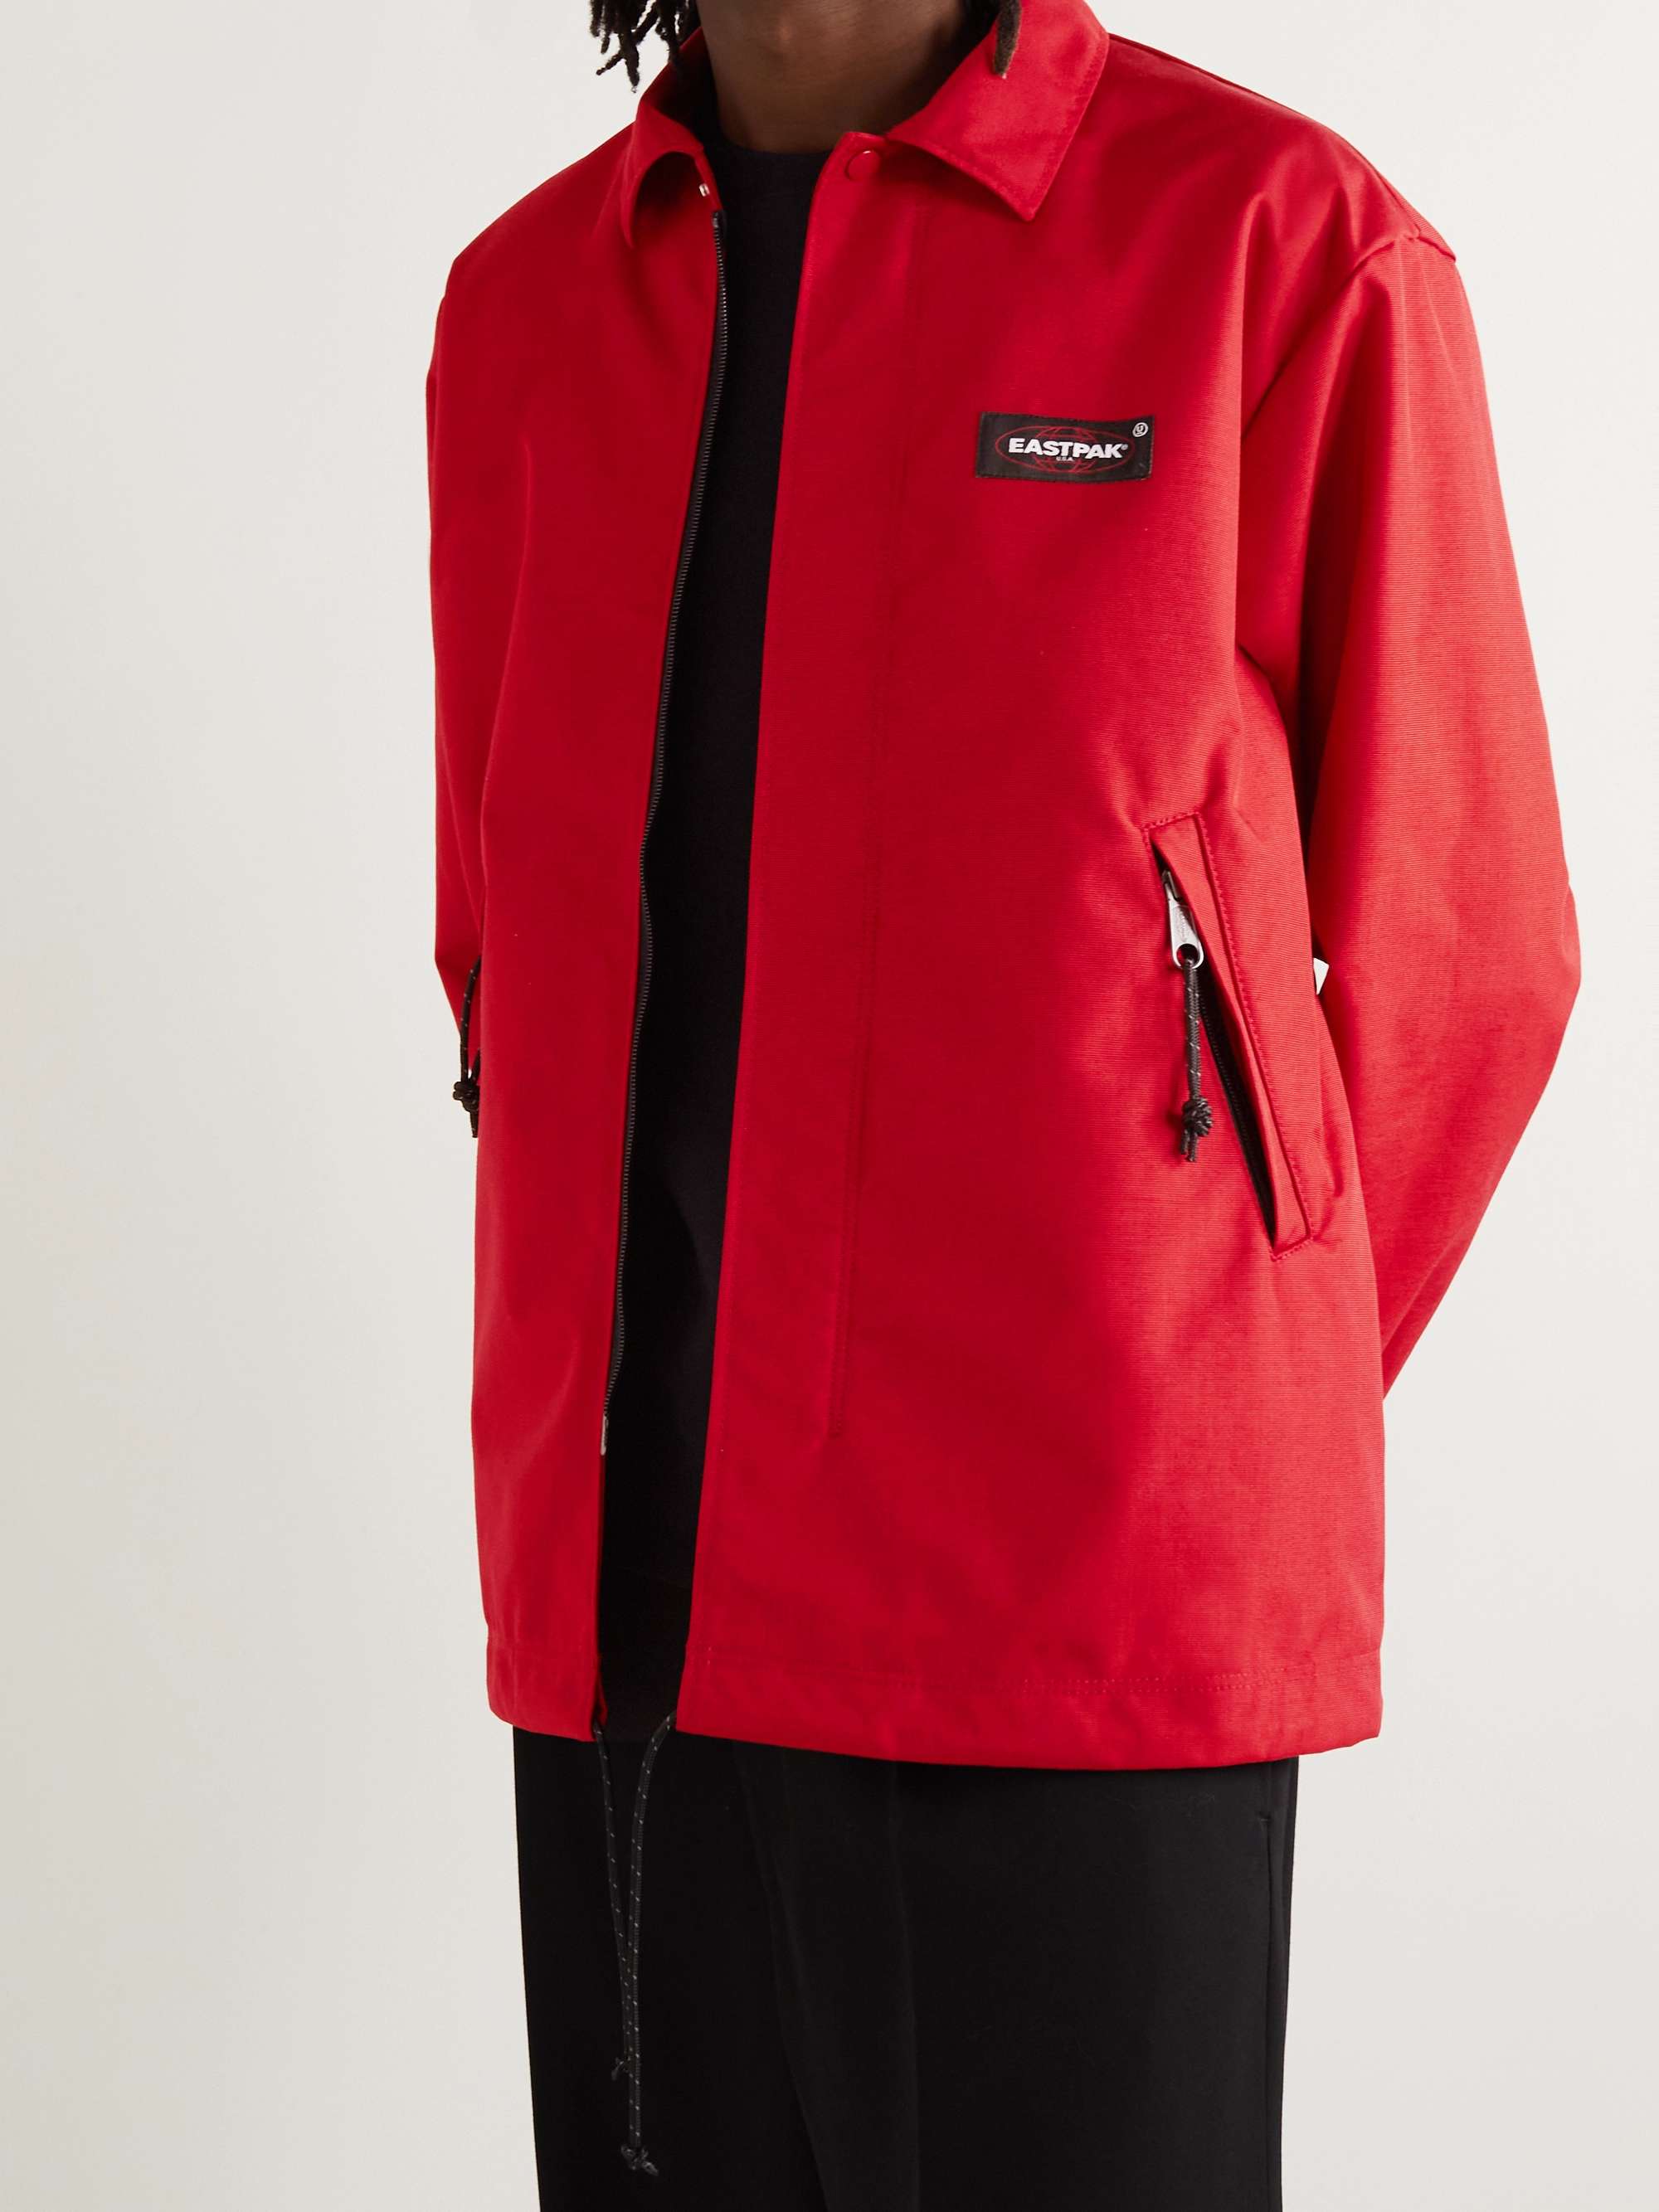 UNDERCOVER + Eastpak Logo-Appliquéd Nylon Blouson Jacket for Men | MR PORTER